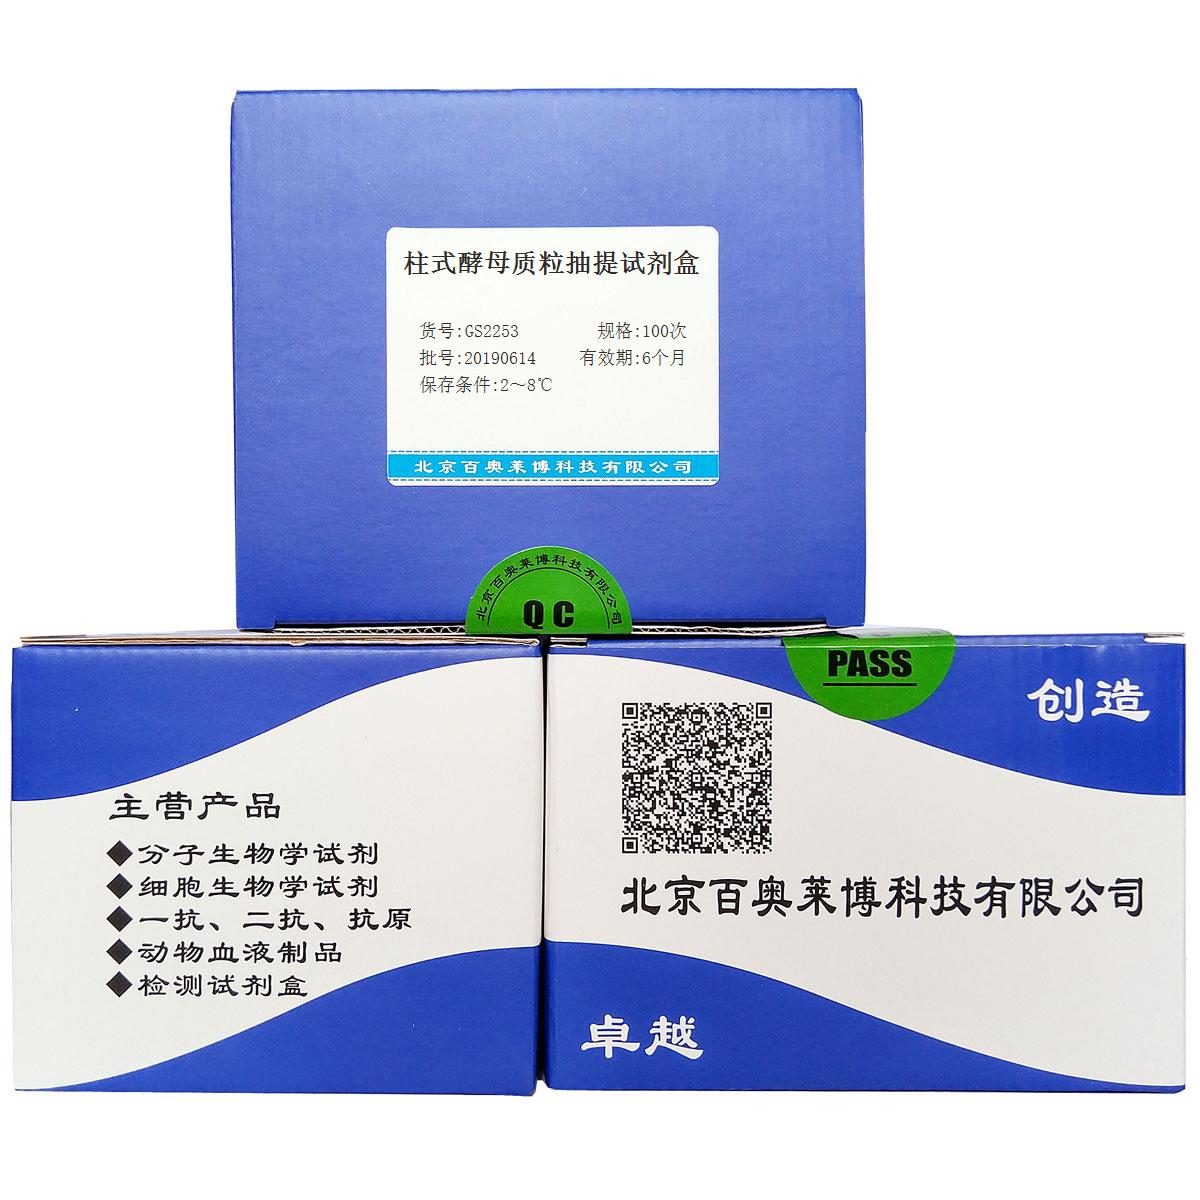 柱式酵母质粒抽提试剂盒北京现货